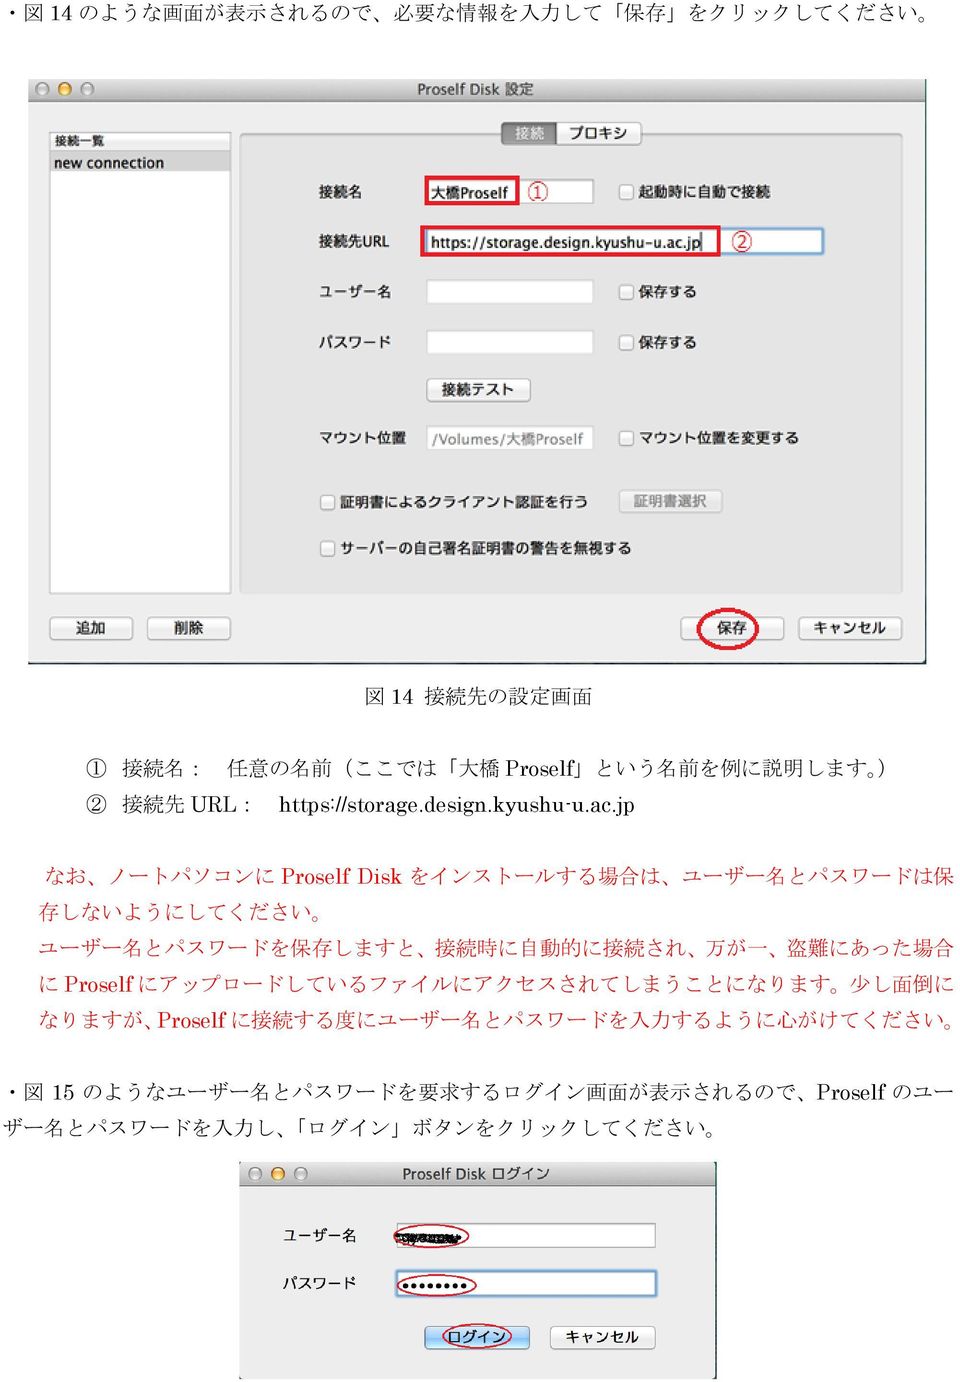 jp なお ノートパソコンに Proself Disk をインストールする 場 合 は ユーザー 名 とパスワードは 保 存 しないようにしてください ユーザー 名 とパスワードを 保 存 しますと 接 続 時 に 自 動 的 に 接 続 され 万 が 一 盗 難 にあった